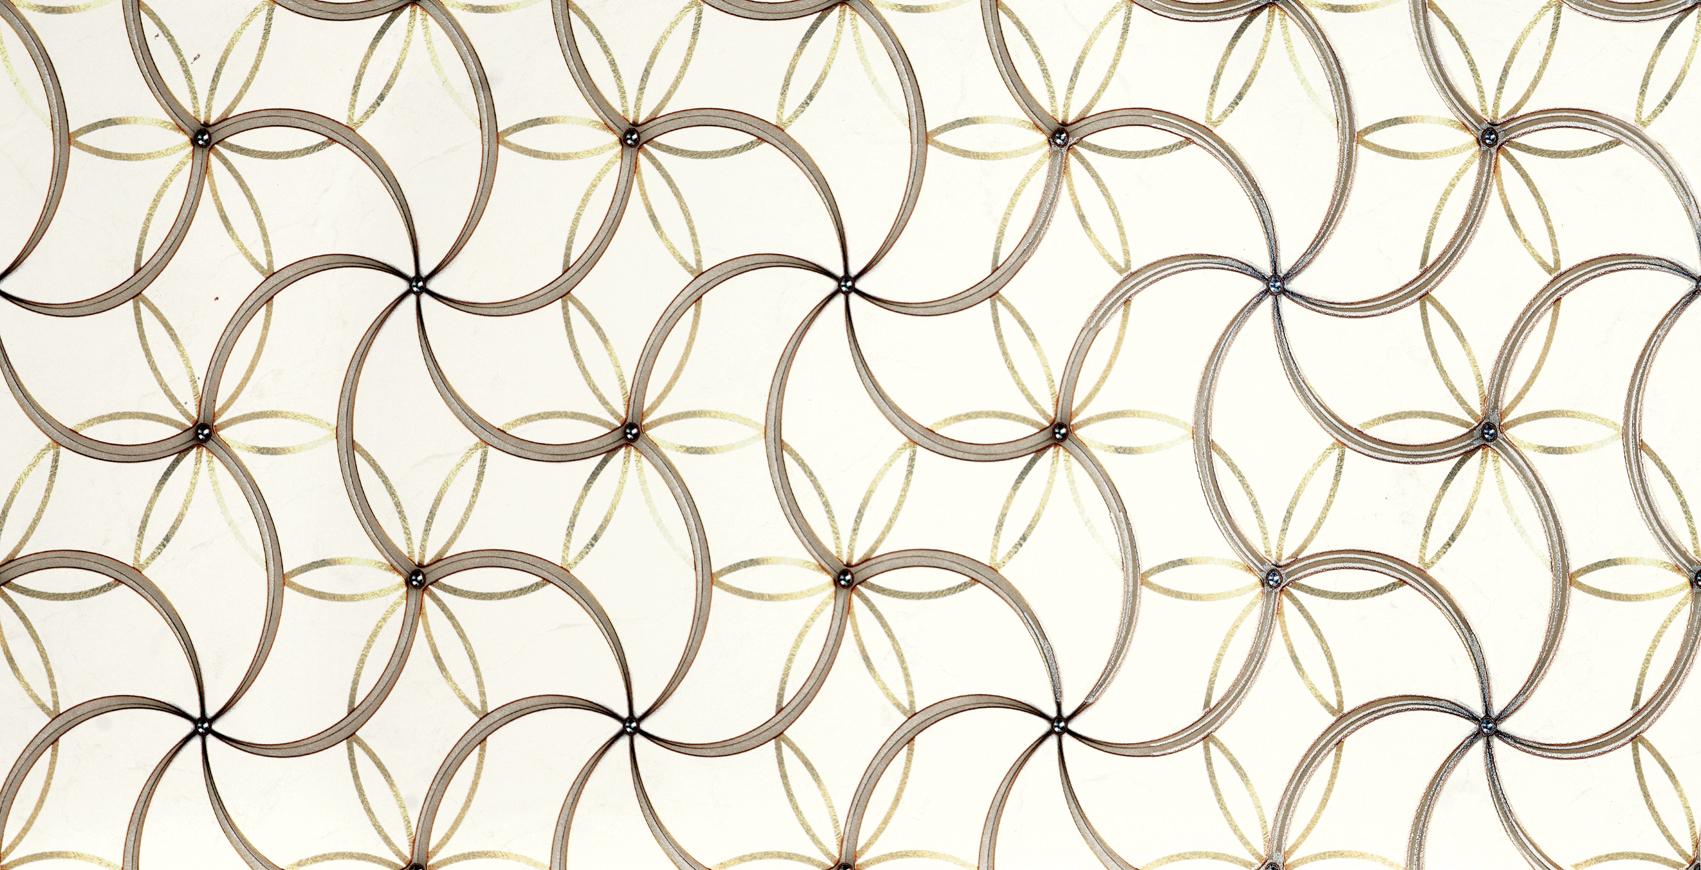 Digital Glazed Vitrified Tiles for Bathroom Tiles, Kitchen Tiles, Accent Tiles